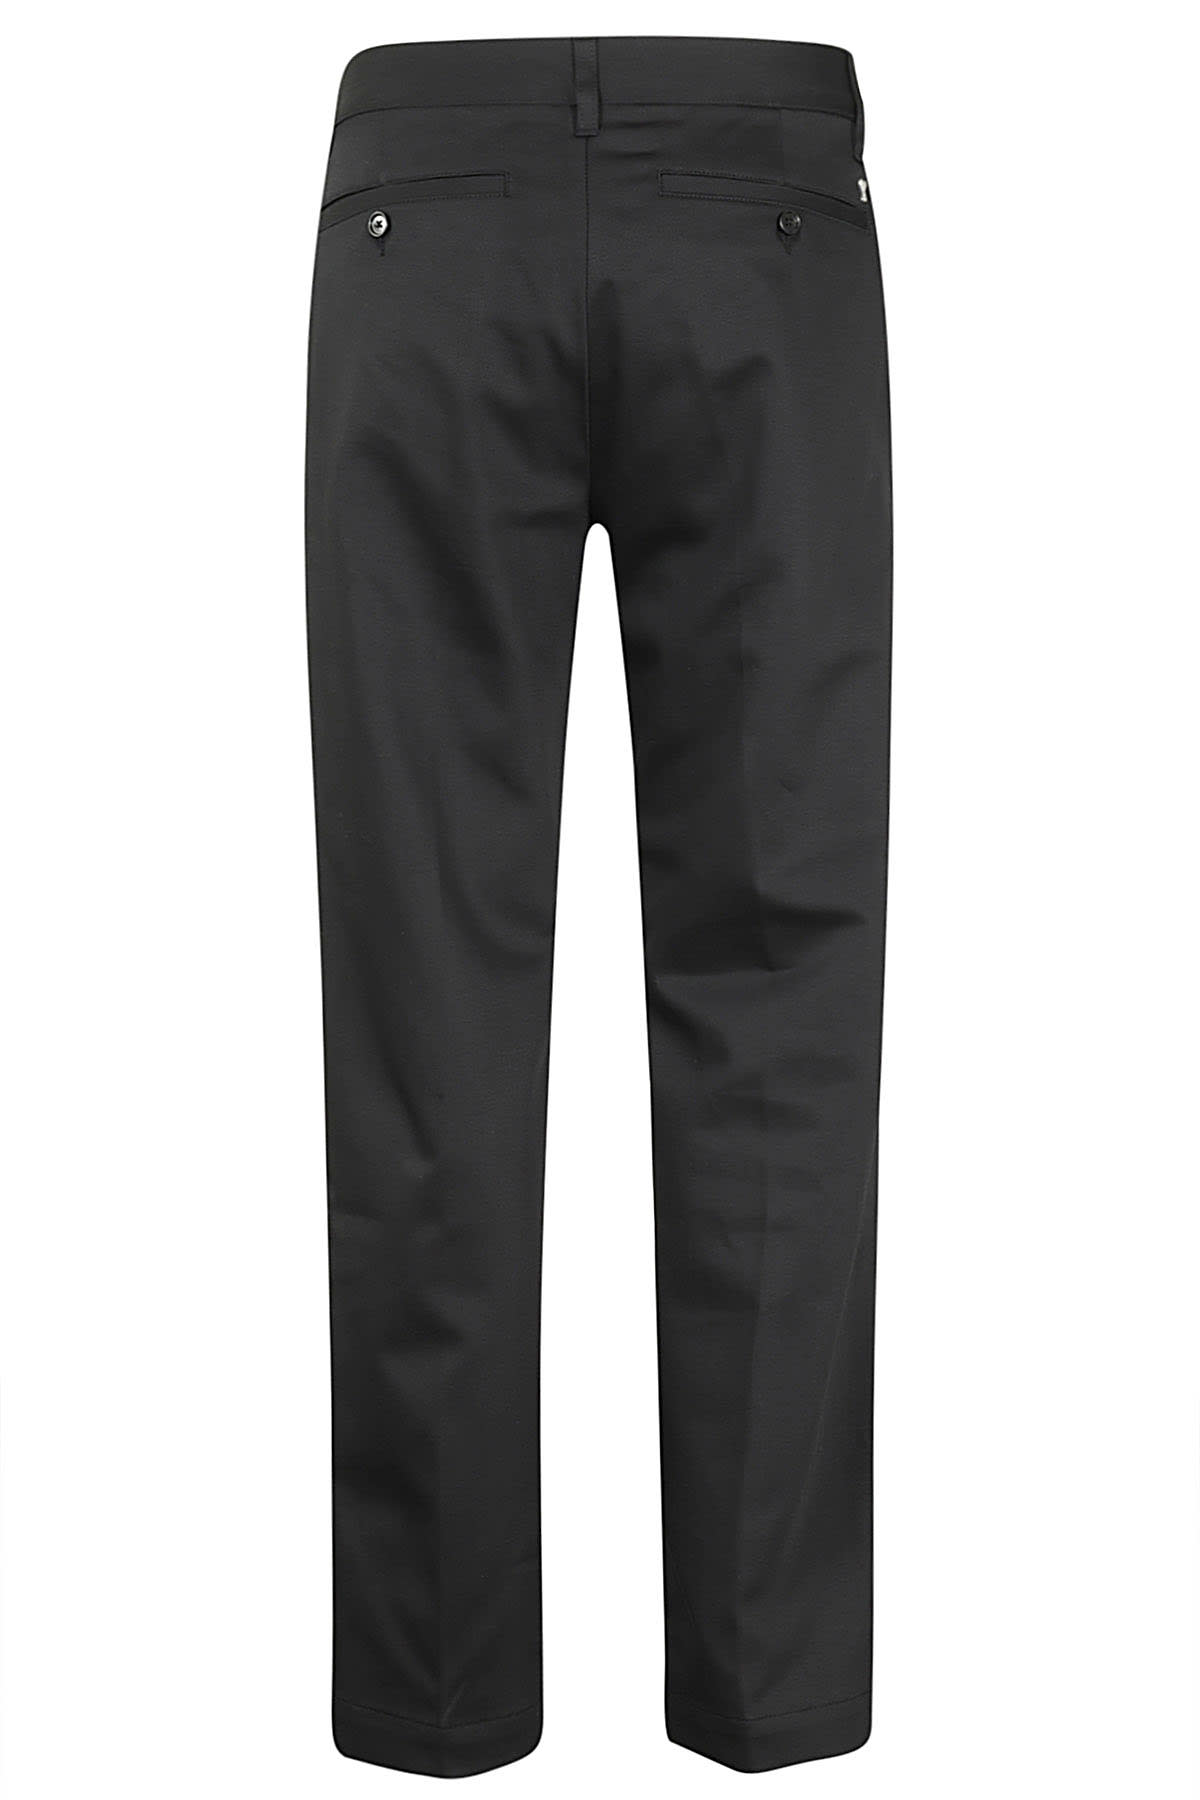 Shop Ami Alexandre Mattiussi Straight Chino Trousers In Black